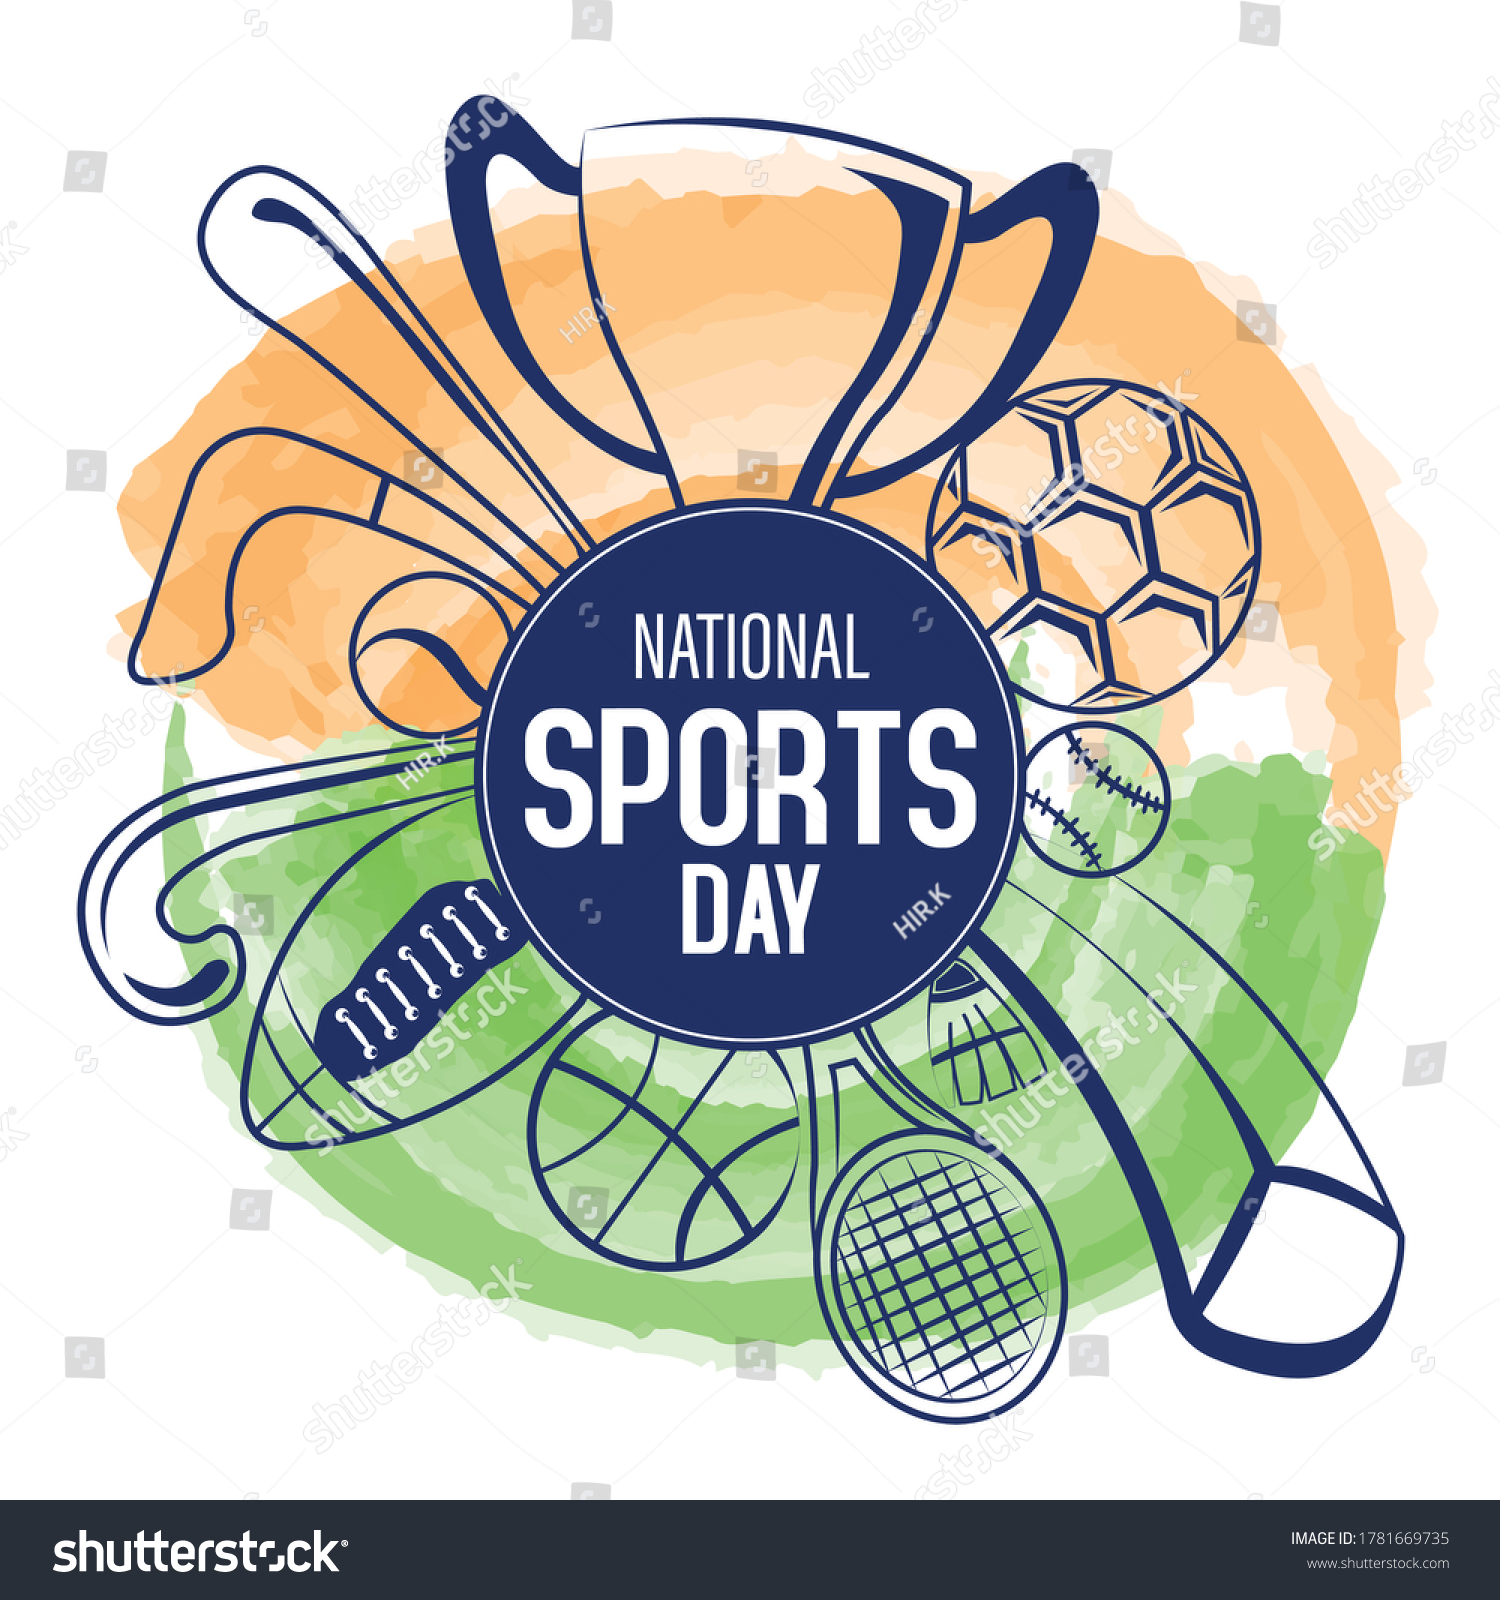 15,519 National sport day Stock Vectors, Images & Vector Art | Shutterstock